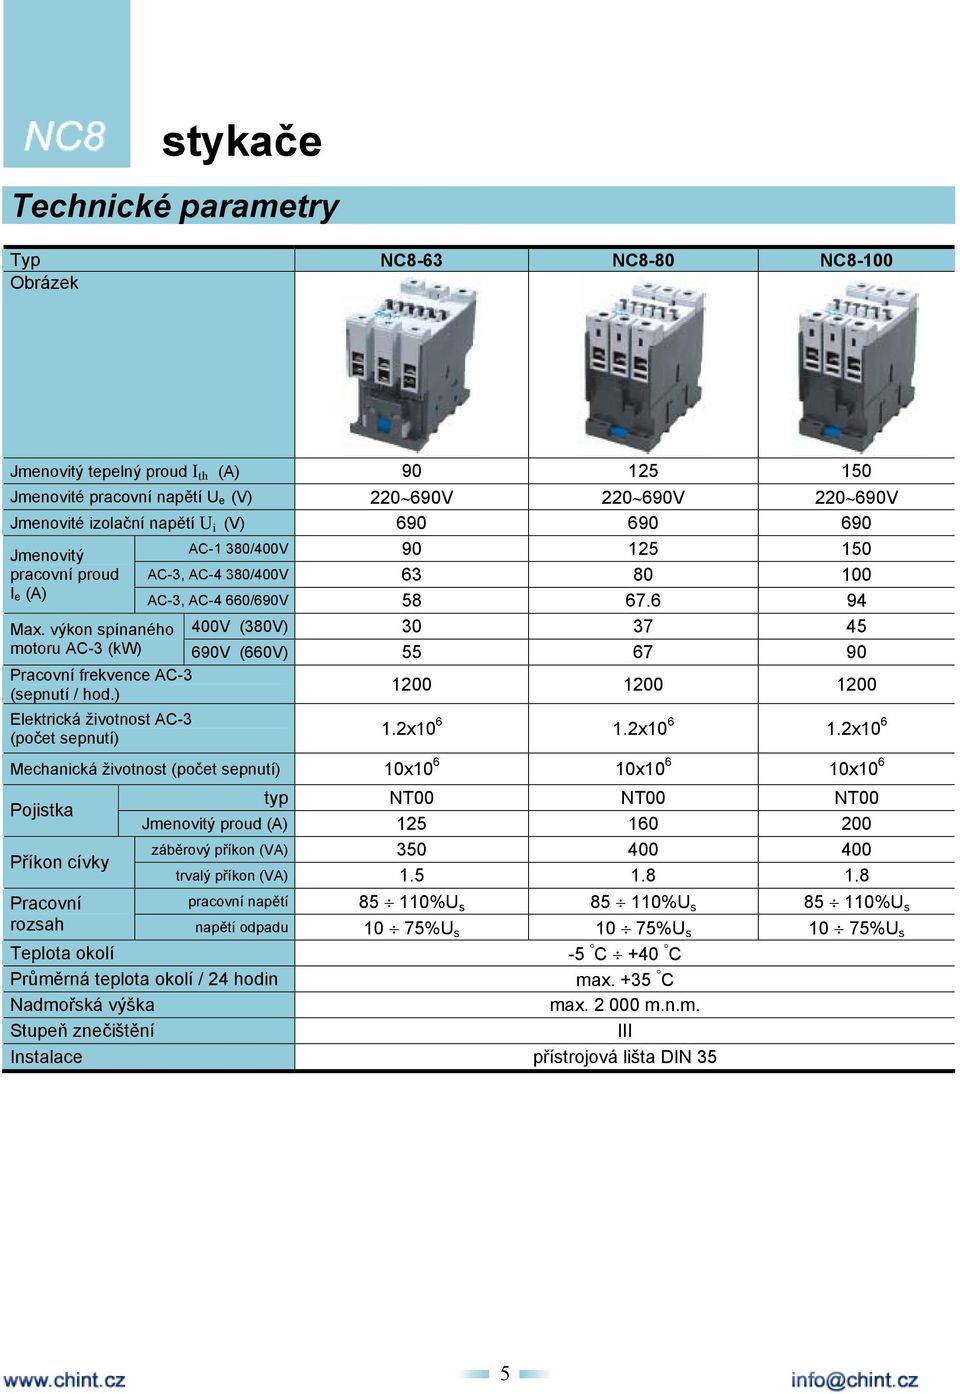 výkon spínaného motoru AC-3 (kw) 690V (660V) 55 67 90 Pracovní frekvence AC-3 (sepnutí / hod.) Elektrická životnost AC-3 (počet sepnutí) 1200 1200 1200 1.2x10 6 1.